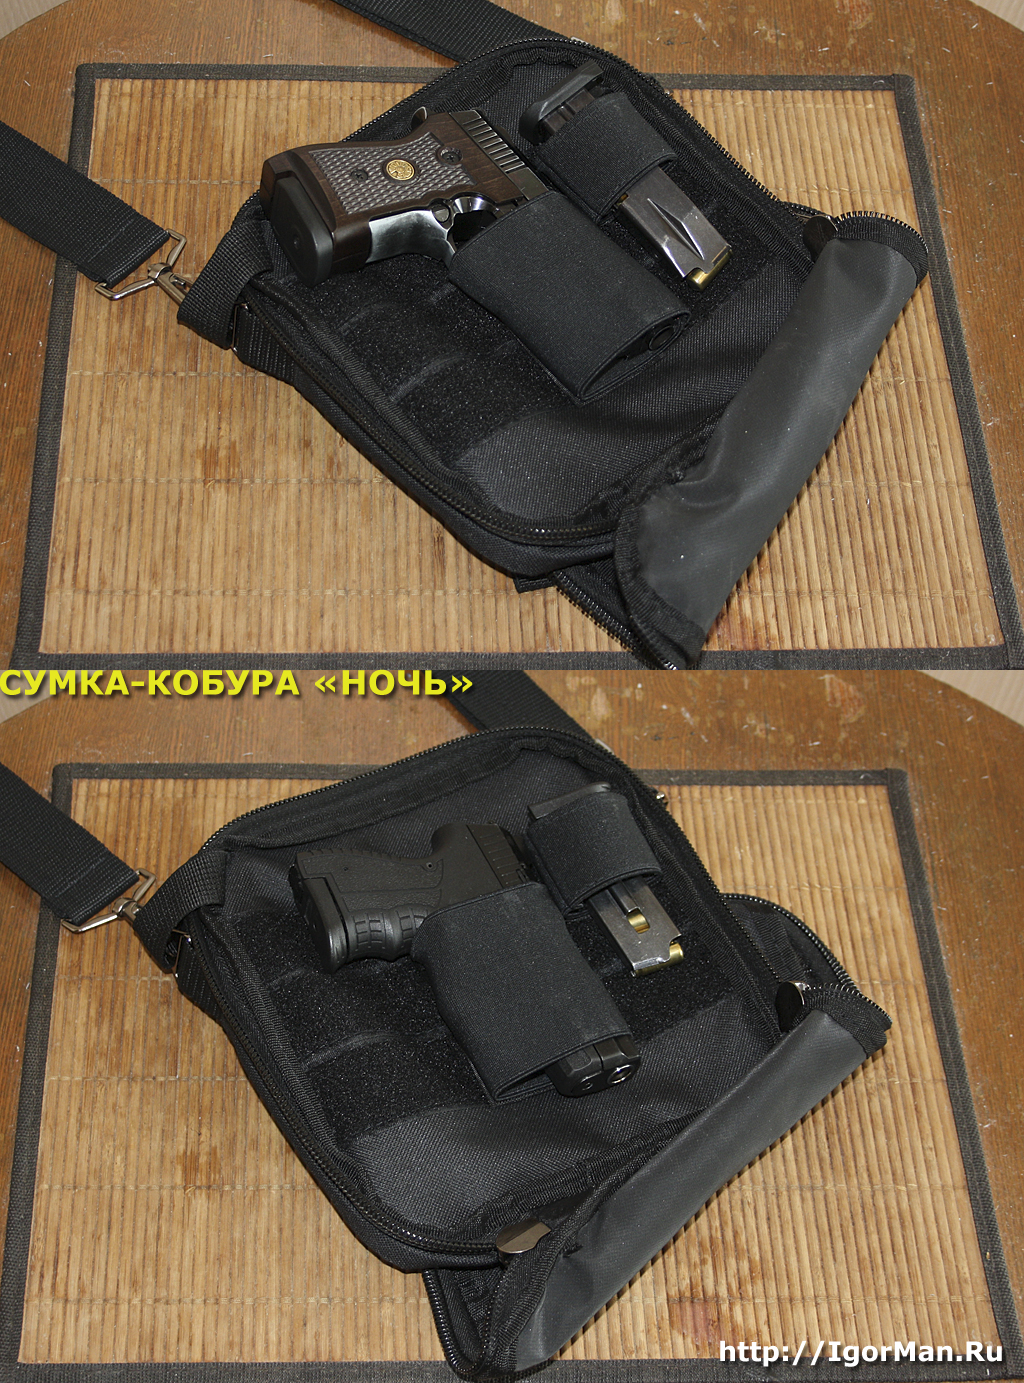 Сумка-кобура для скрытого ношения пистолета "Ночь". Пистолеты Streamer 2014 и Шарк с запасными магазинами.